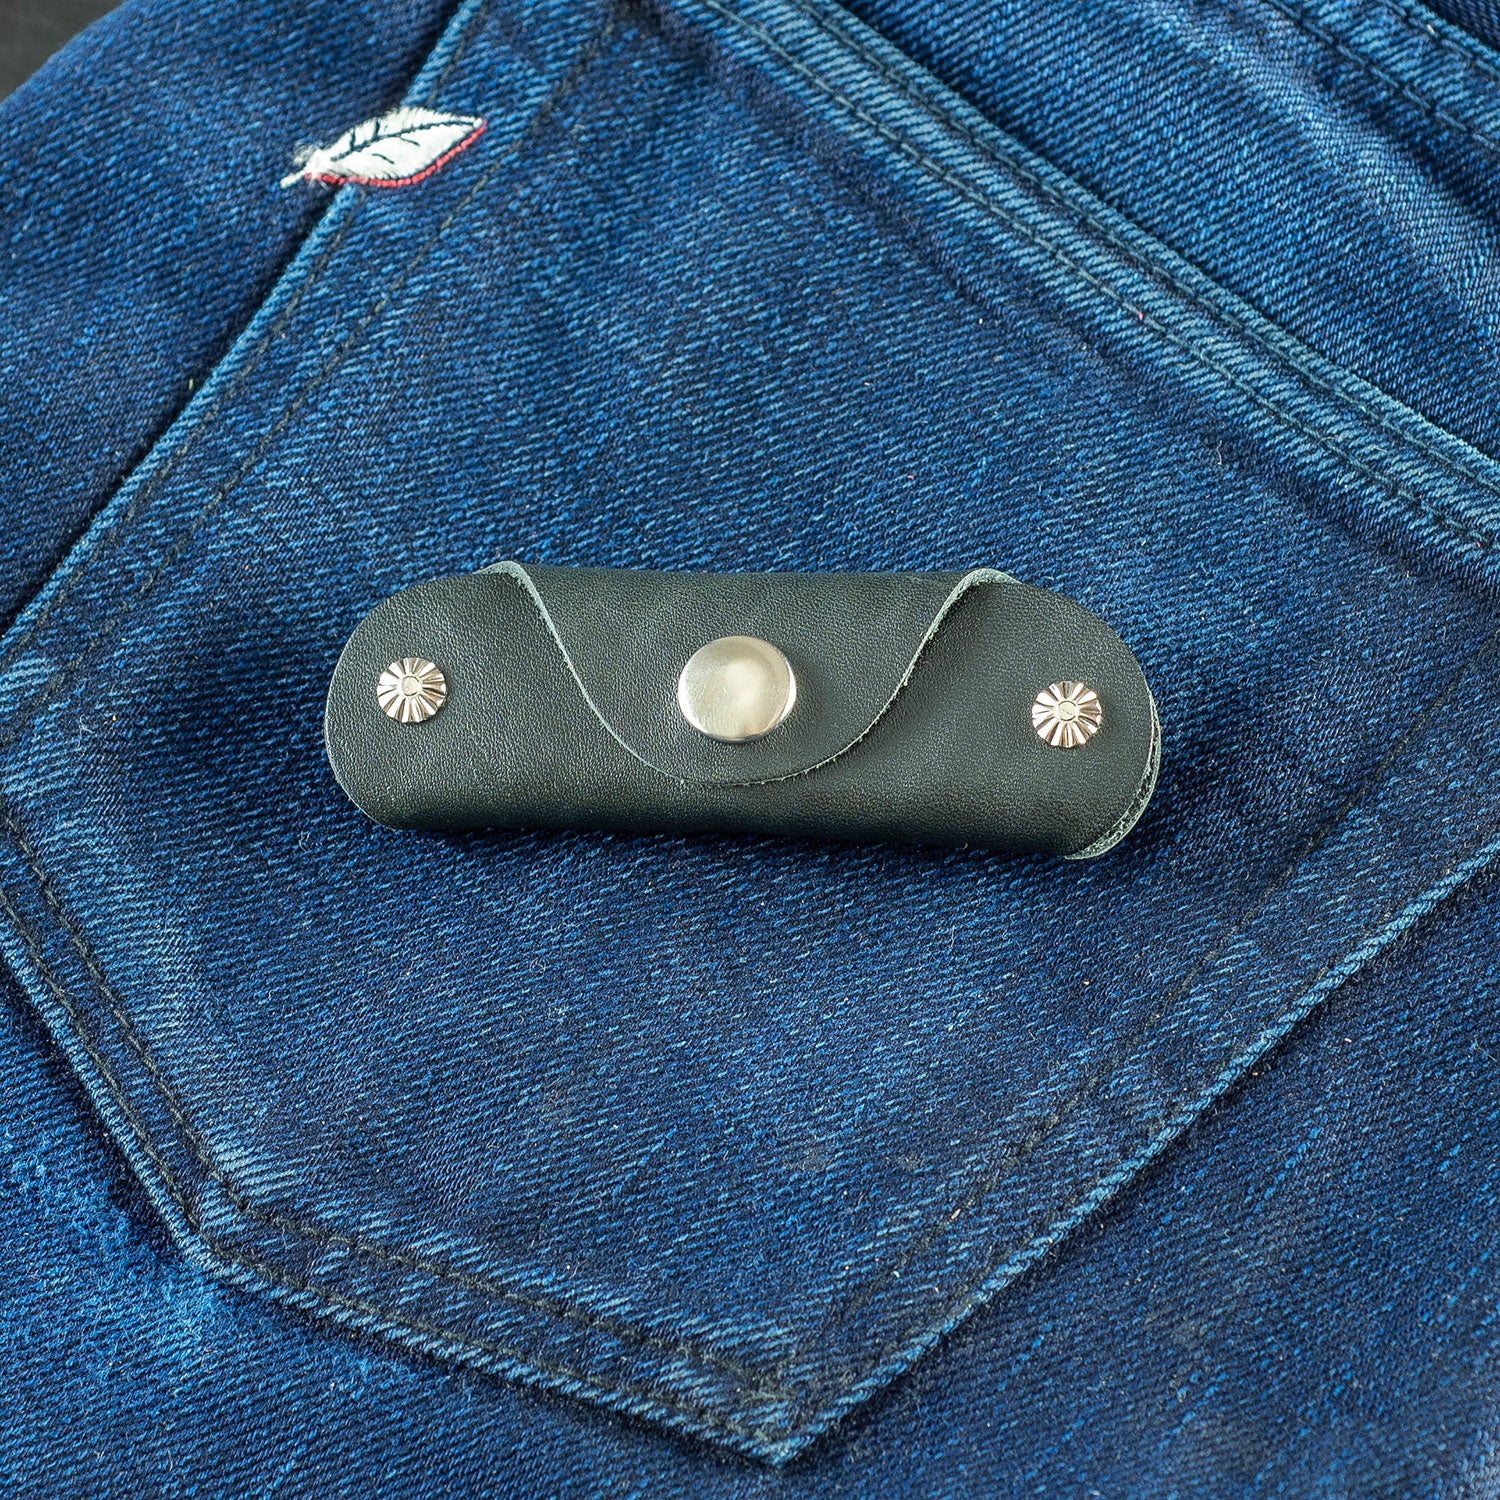 leather key holder